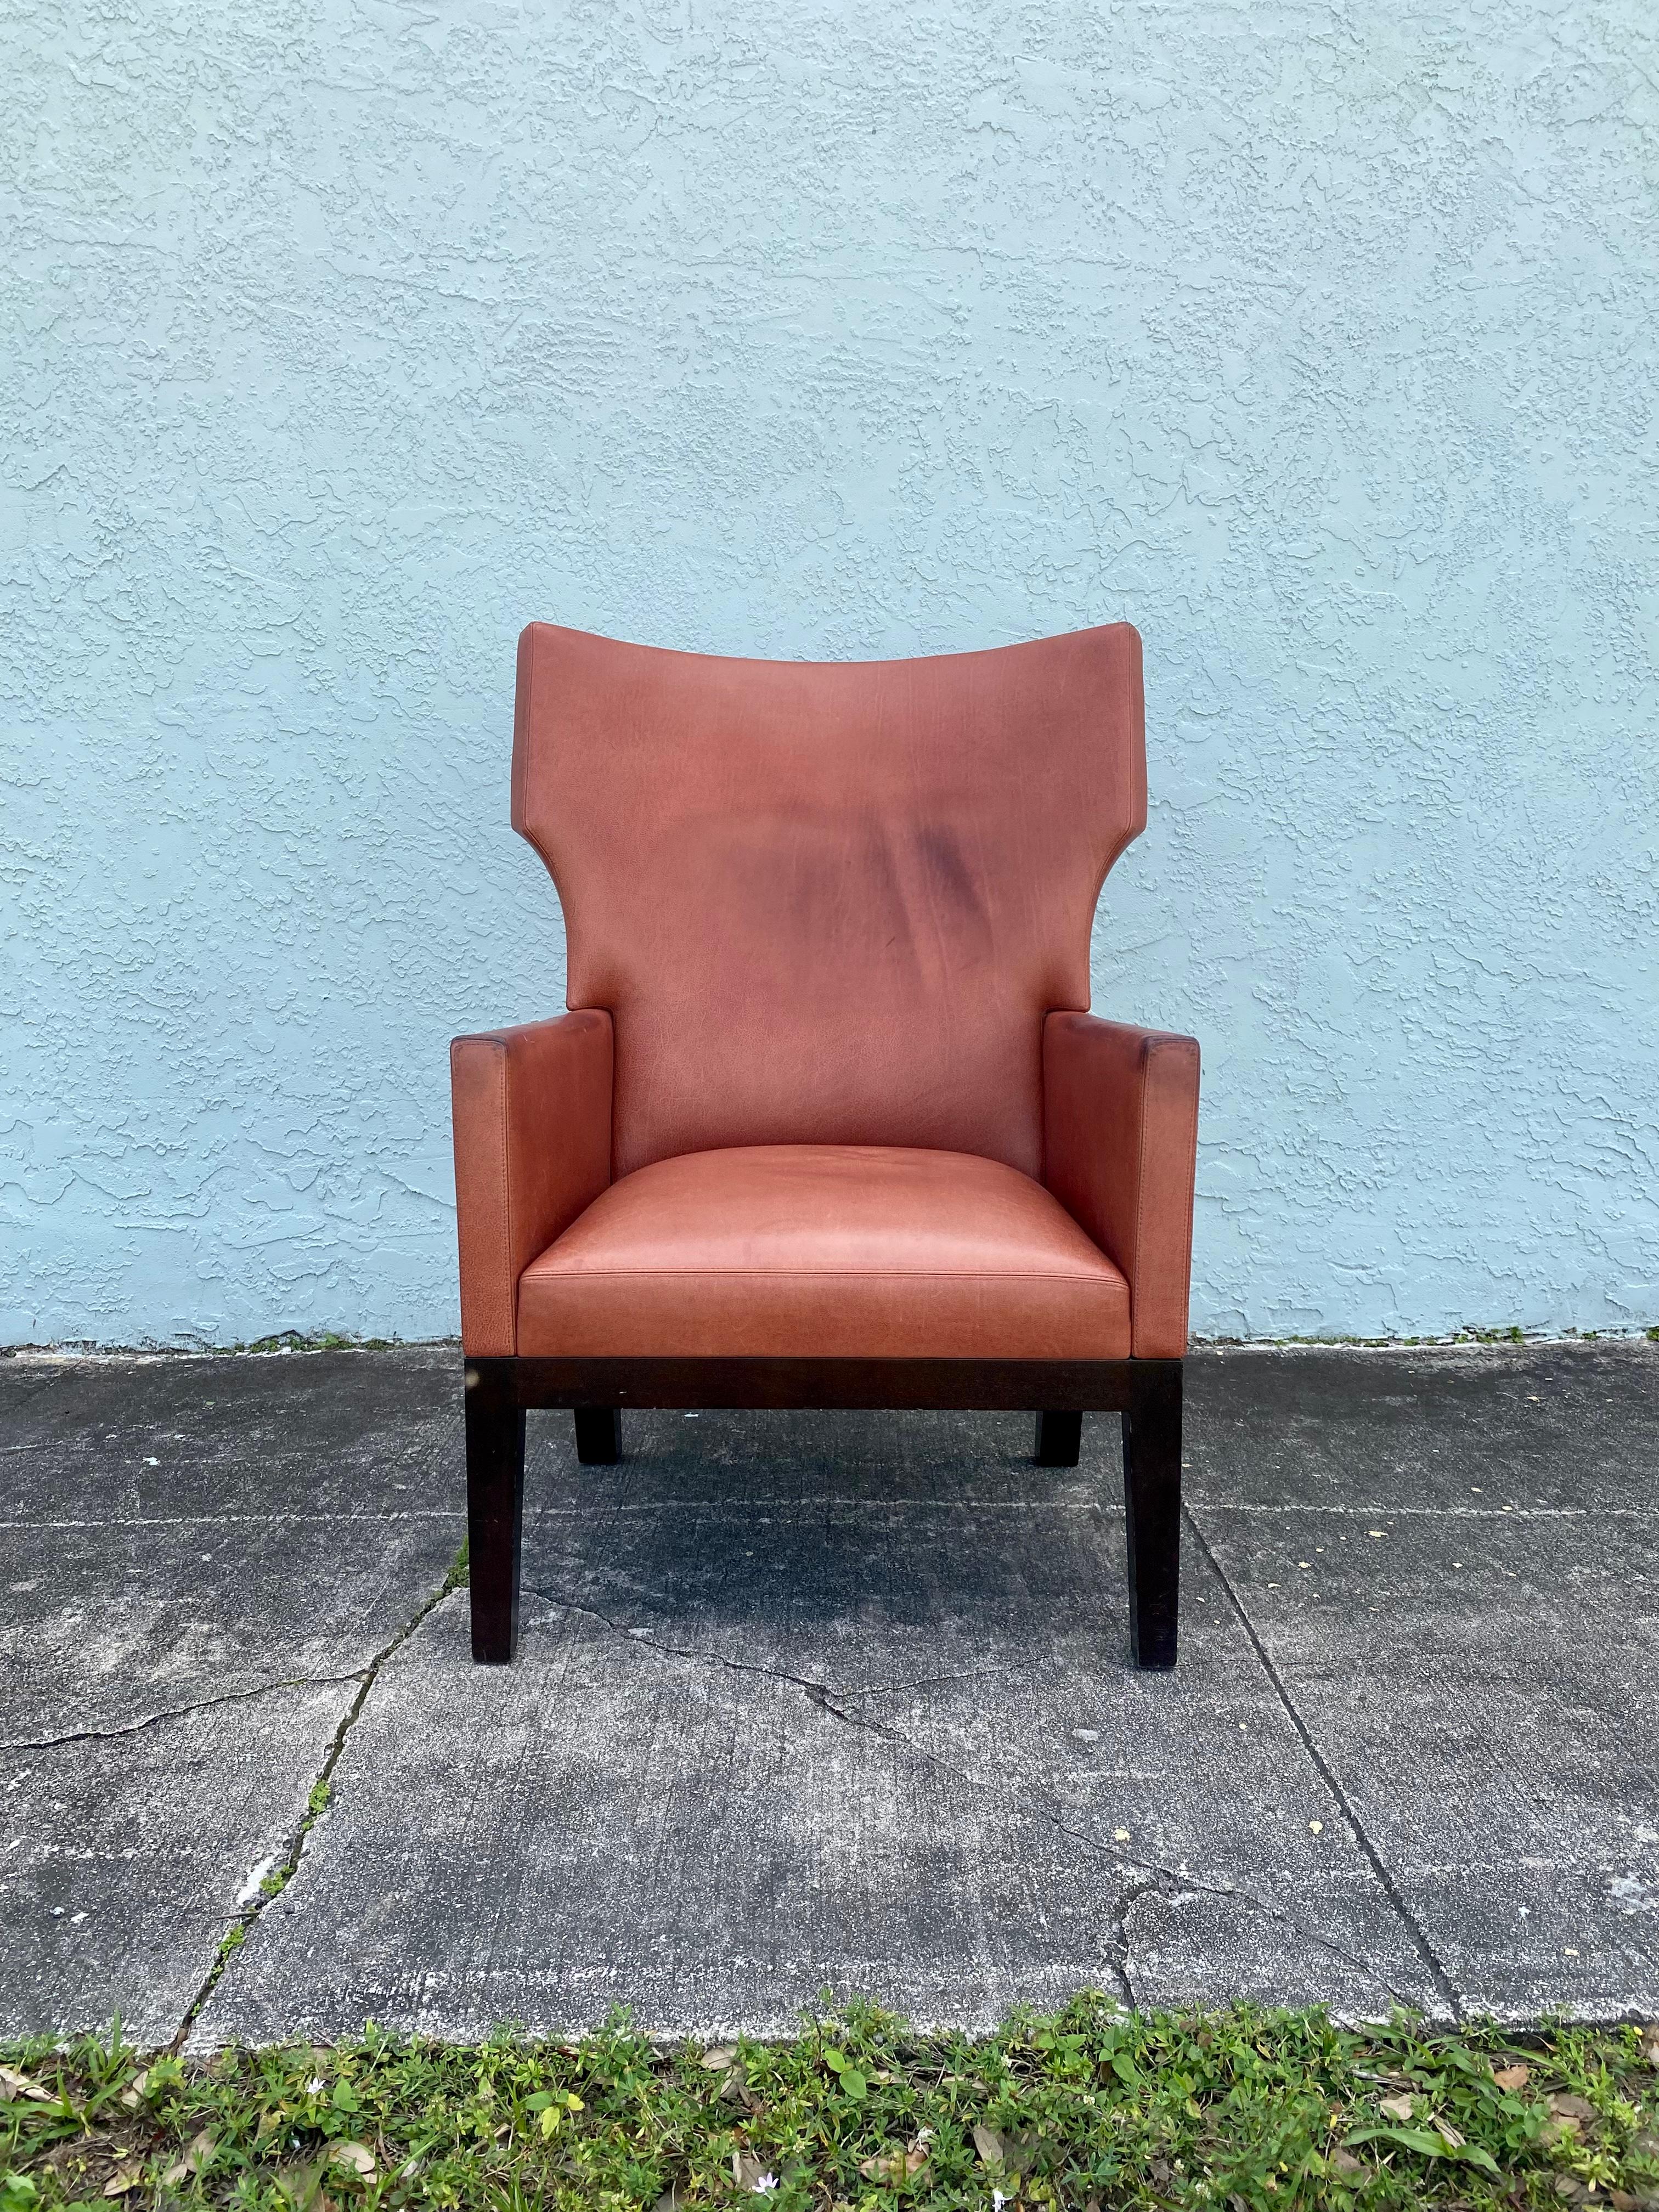 Nous vous proposons ici l'une des chaises les plus étonnantes et les plus rares que vous puissiez espérer trouver. Le design est remarquable partout. La chaise est une pièce d'apparat qui a beaucoup de personnalité !  Il suffit de regarder les